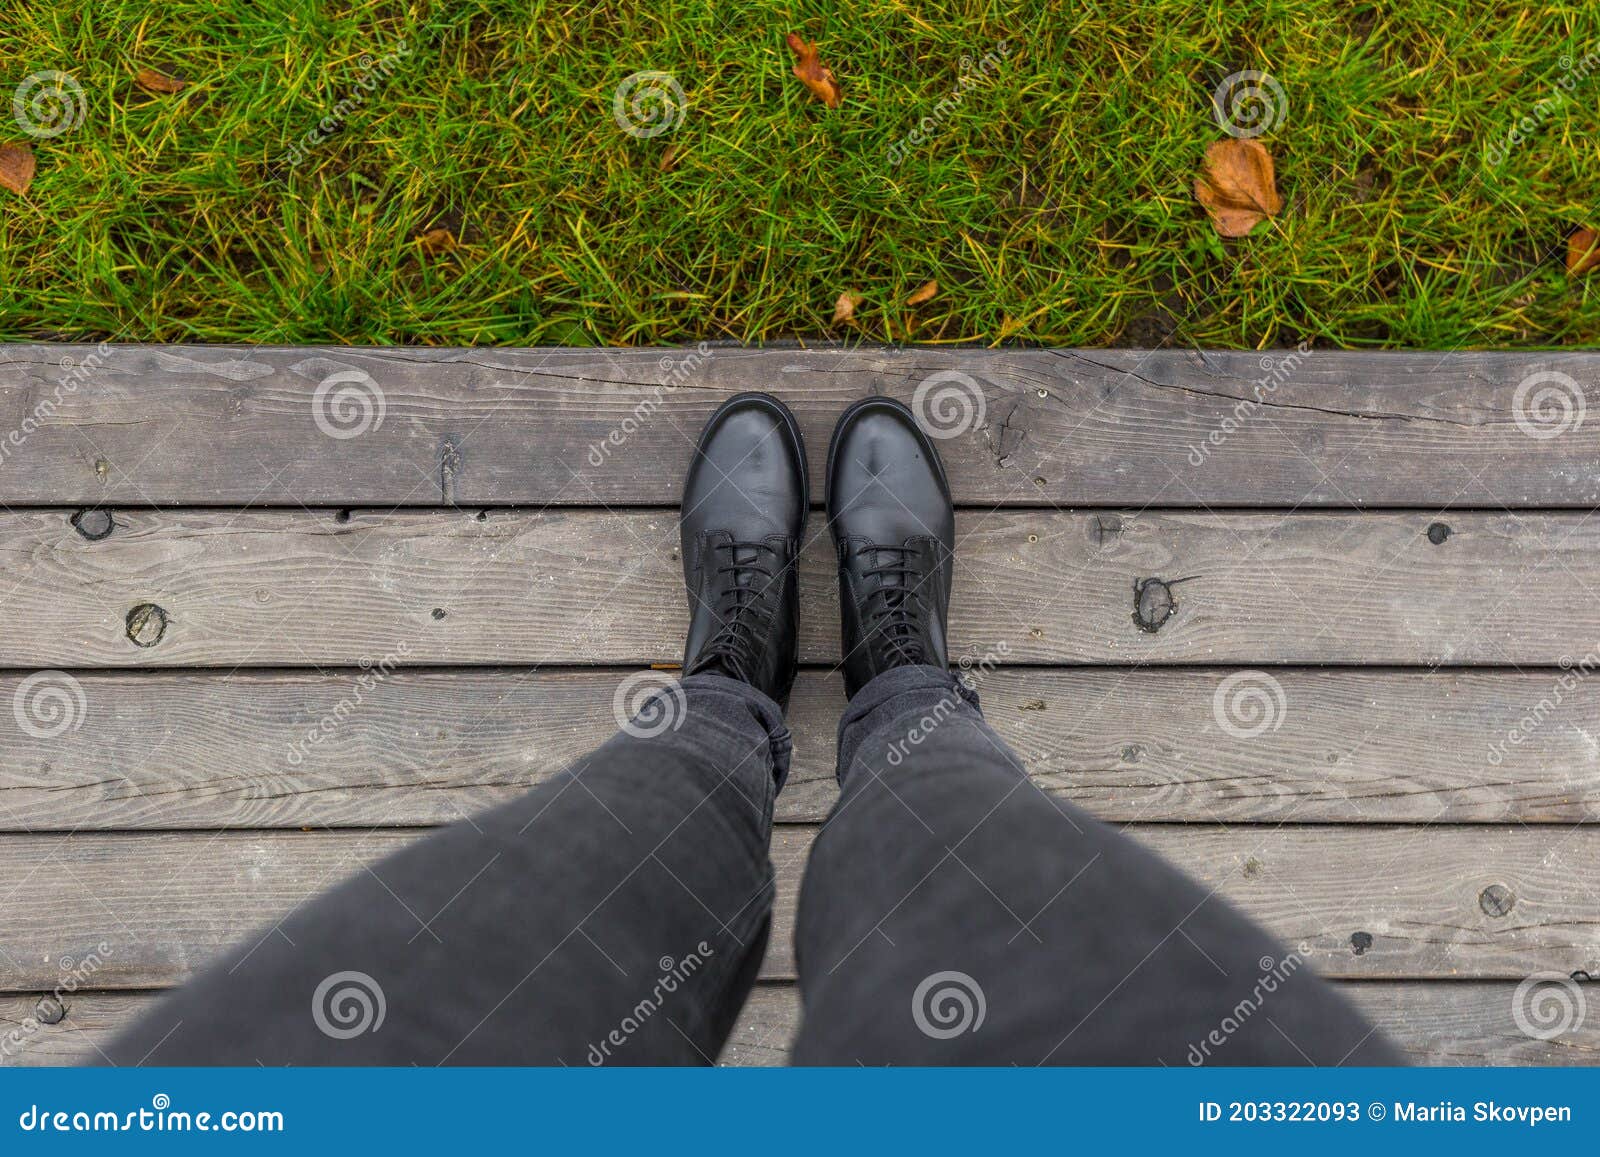 Zapatos Sobre El Muelle De Madera. De Pies Caminando Al Aire Libre. Selfie Juvenil Moderno Imagen de archivo - Imagen de escritorio, pies: 203322093